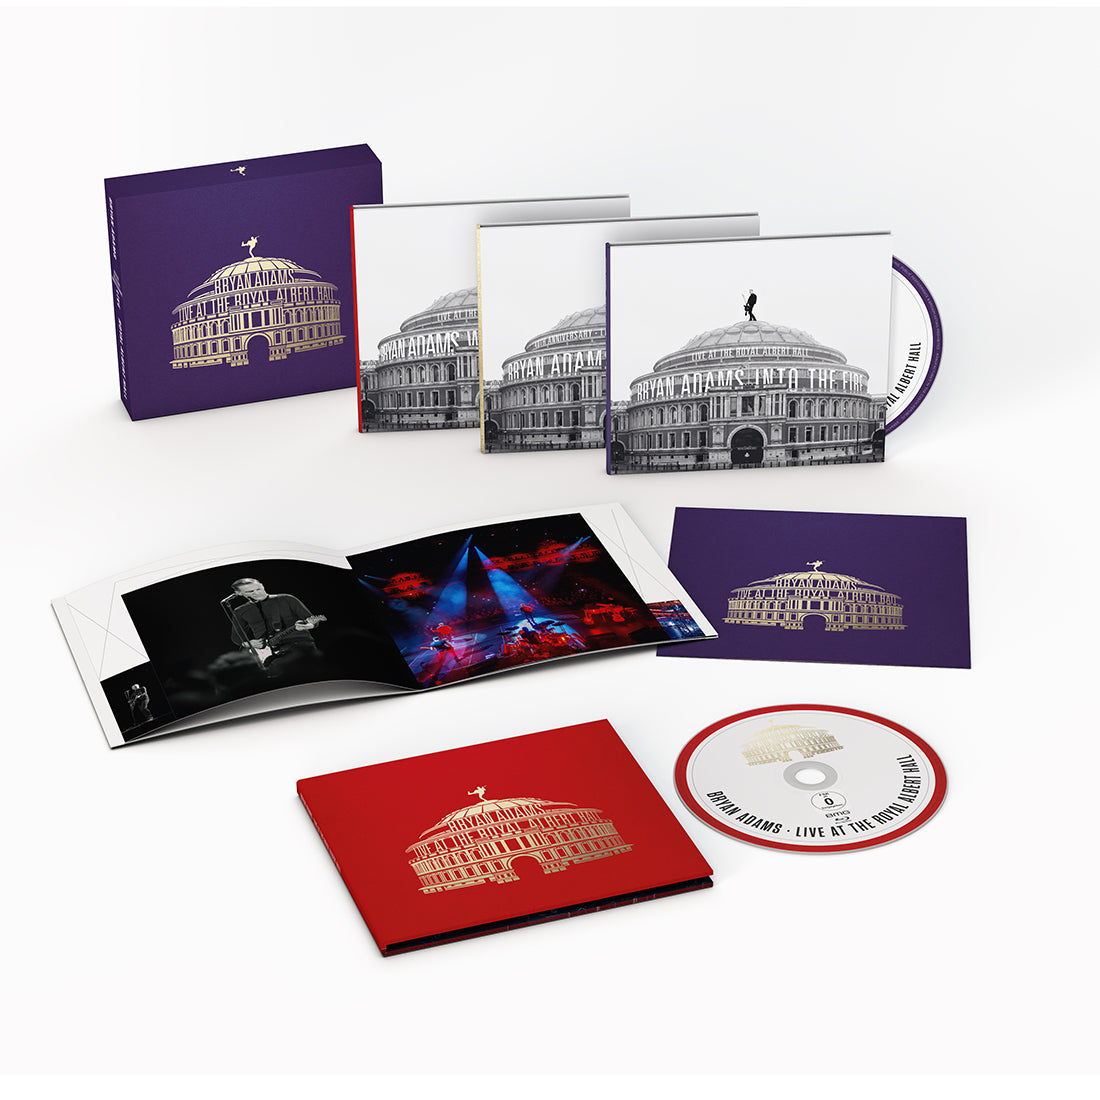 Bryan Adams - Live At The Royal Albert Hall: CD Boxset